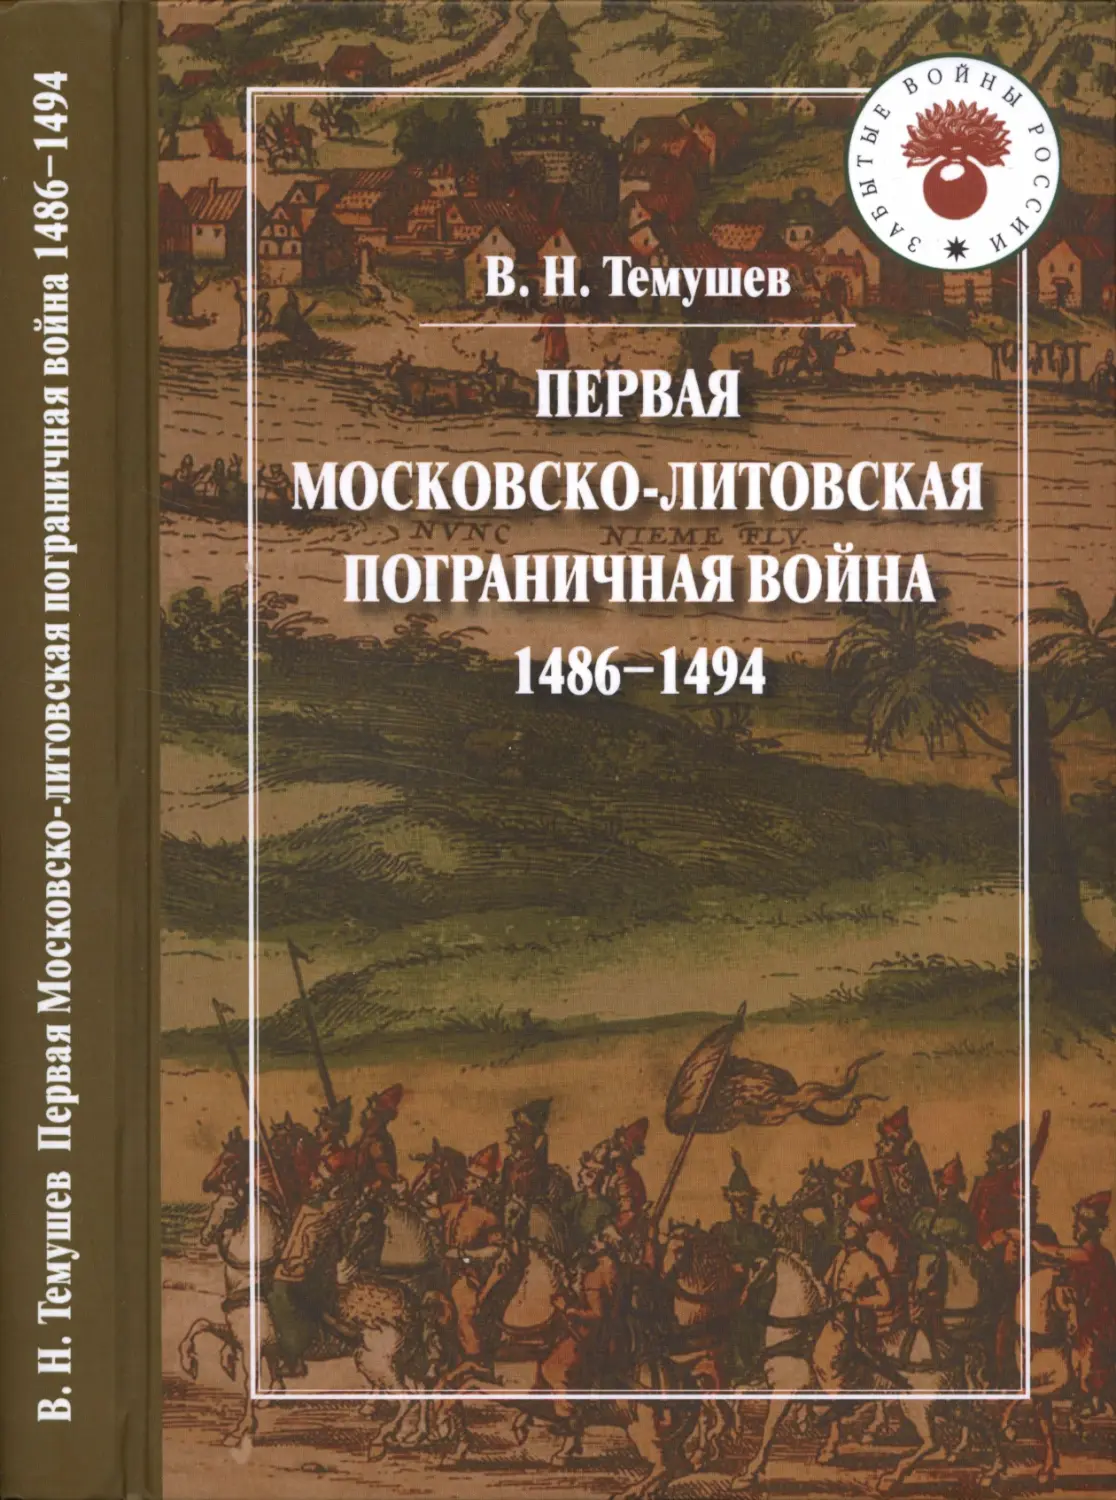 ПЕРВАЯ  МОСКОВСКО-ЛИТОВСКАЯ ПОГРАНИЧНАЯ  ВОЙНА 1486-1494